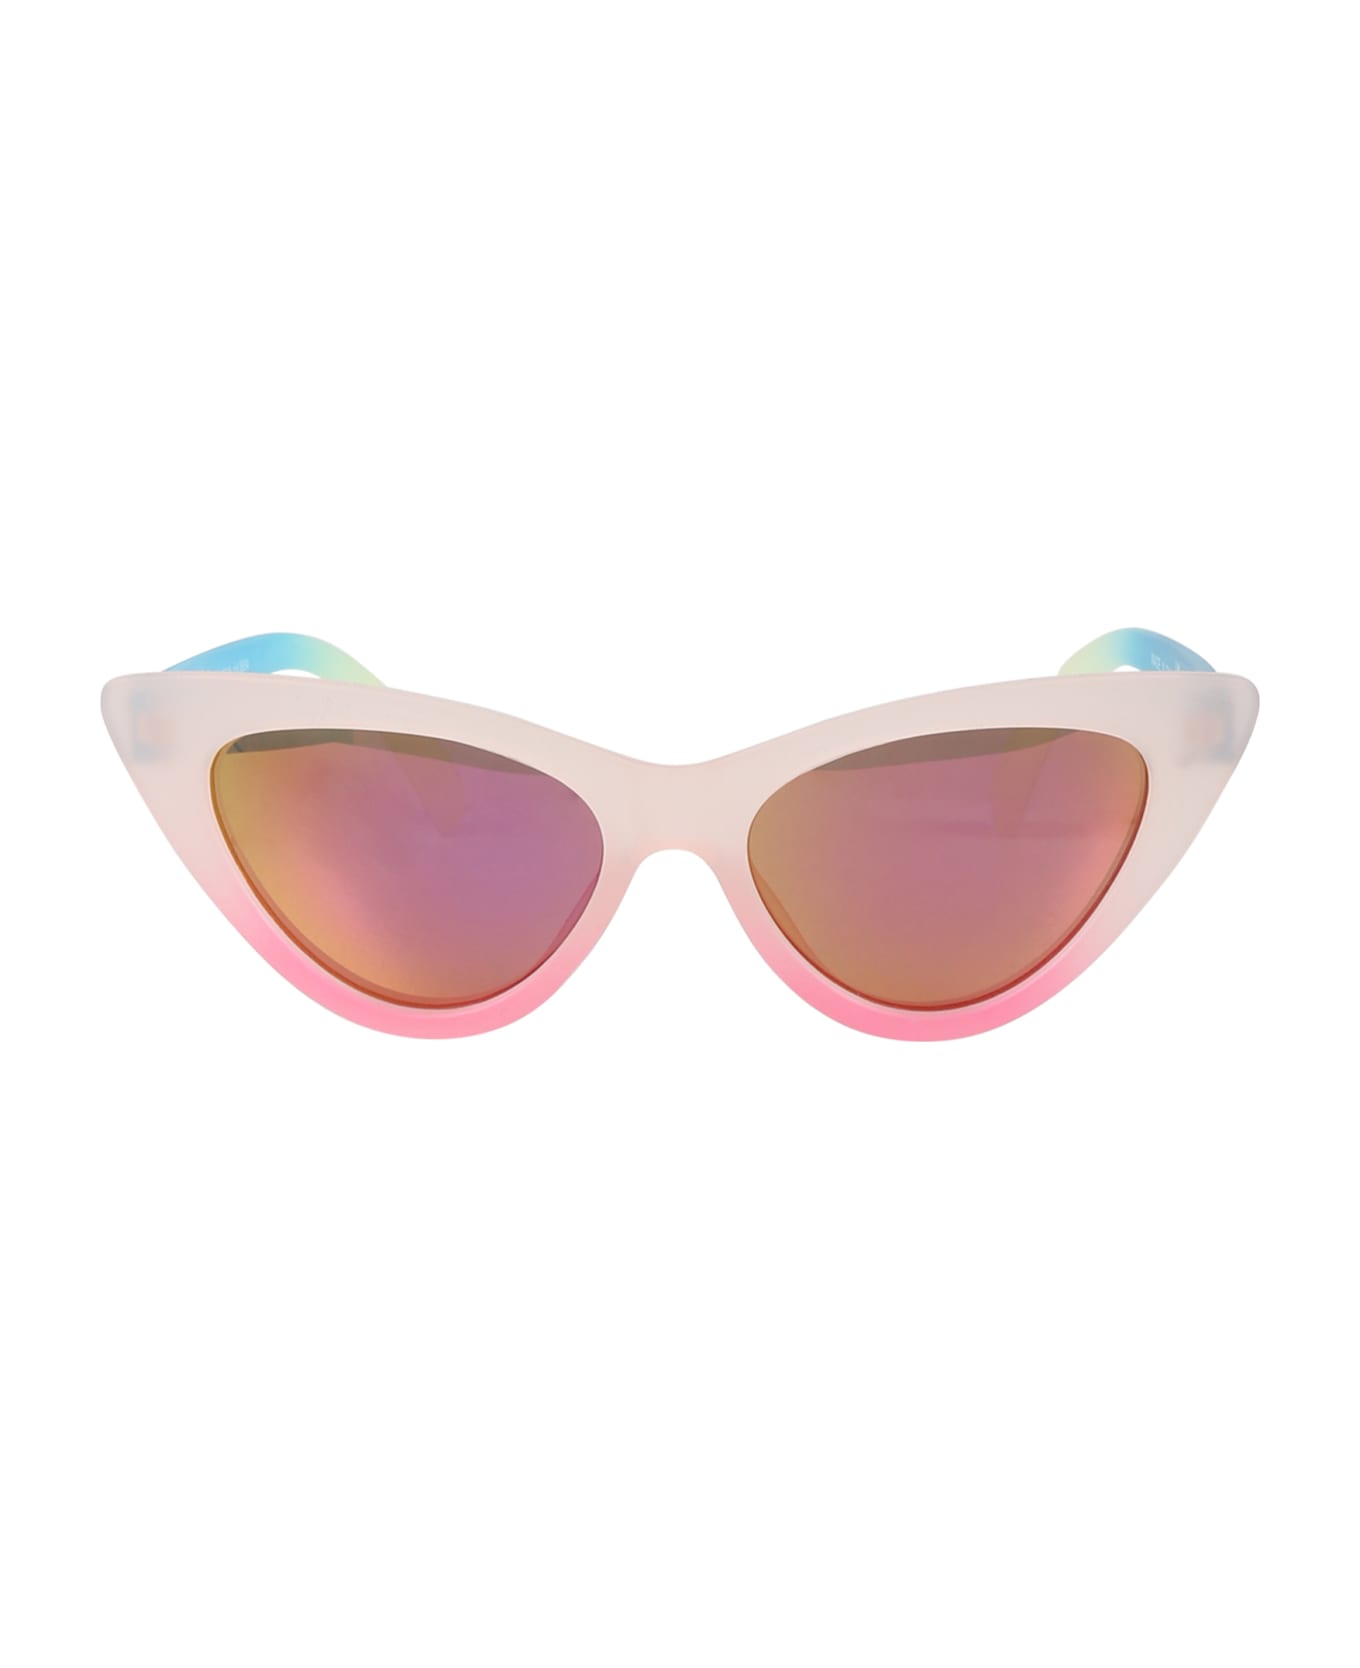 Molo Multicolor Sola Sunglasses For Girl - Multicolor